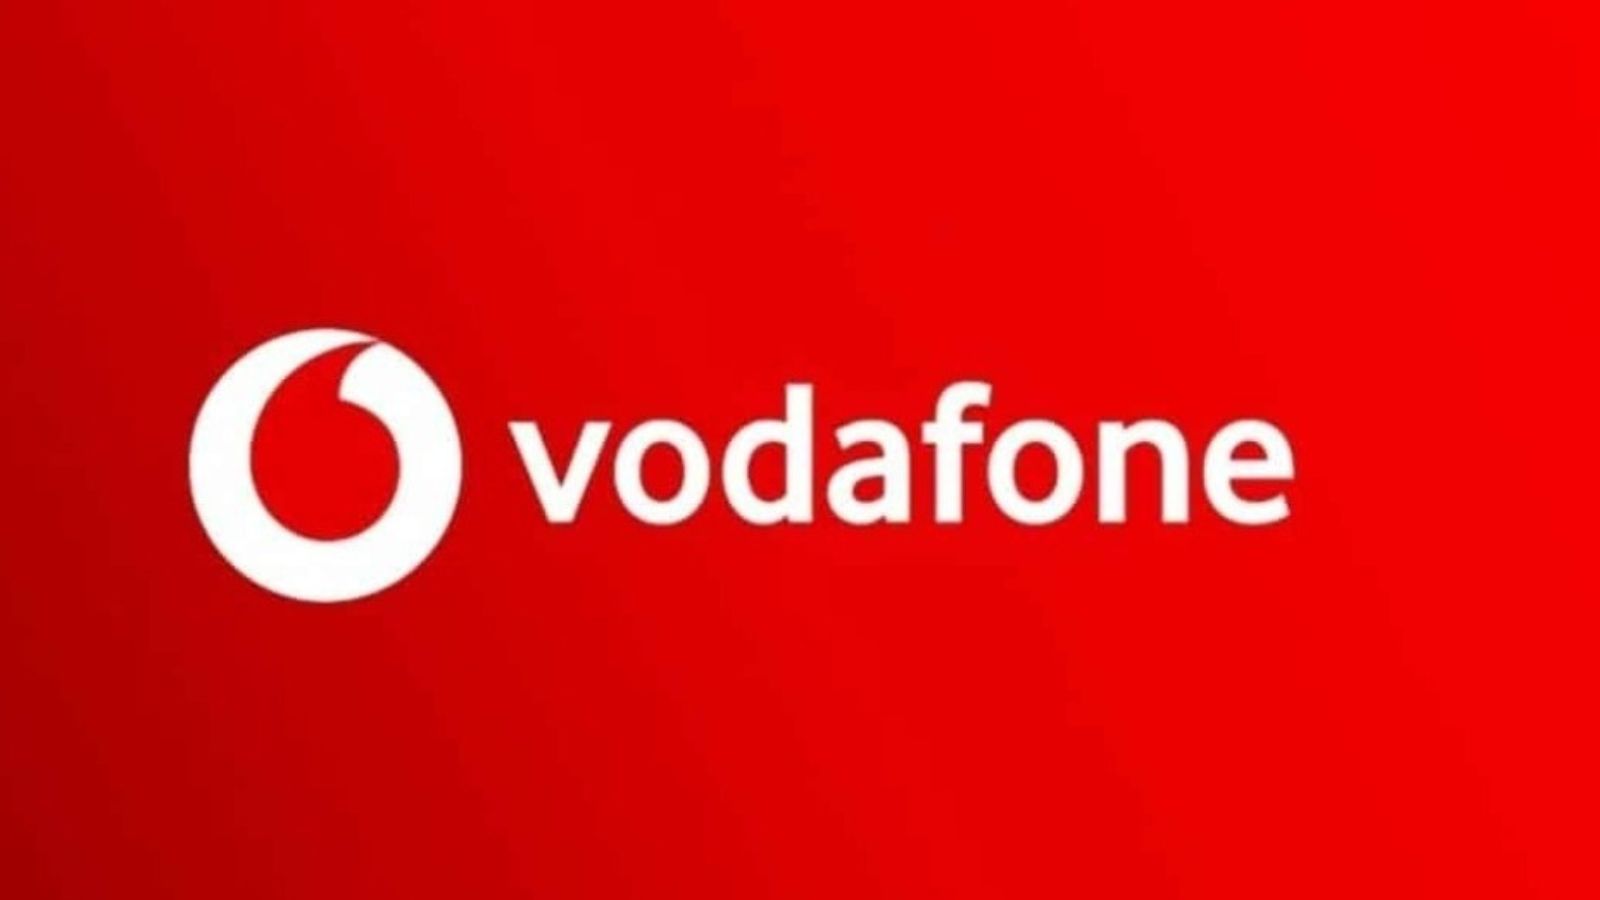 Vodafone Silver offerta concorrenza